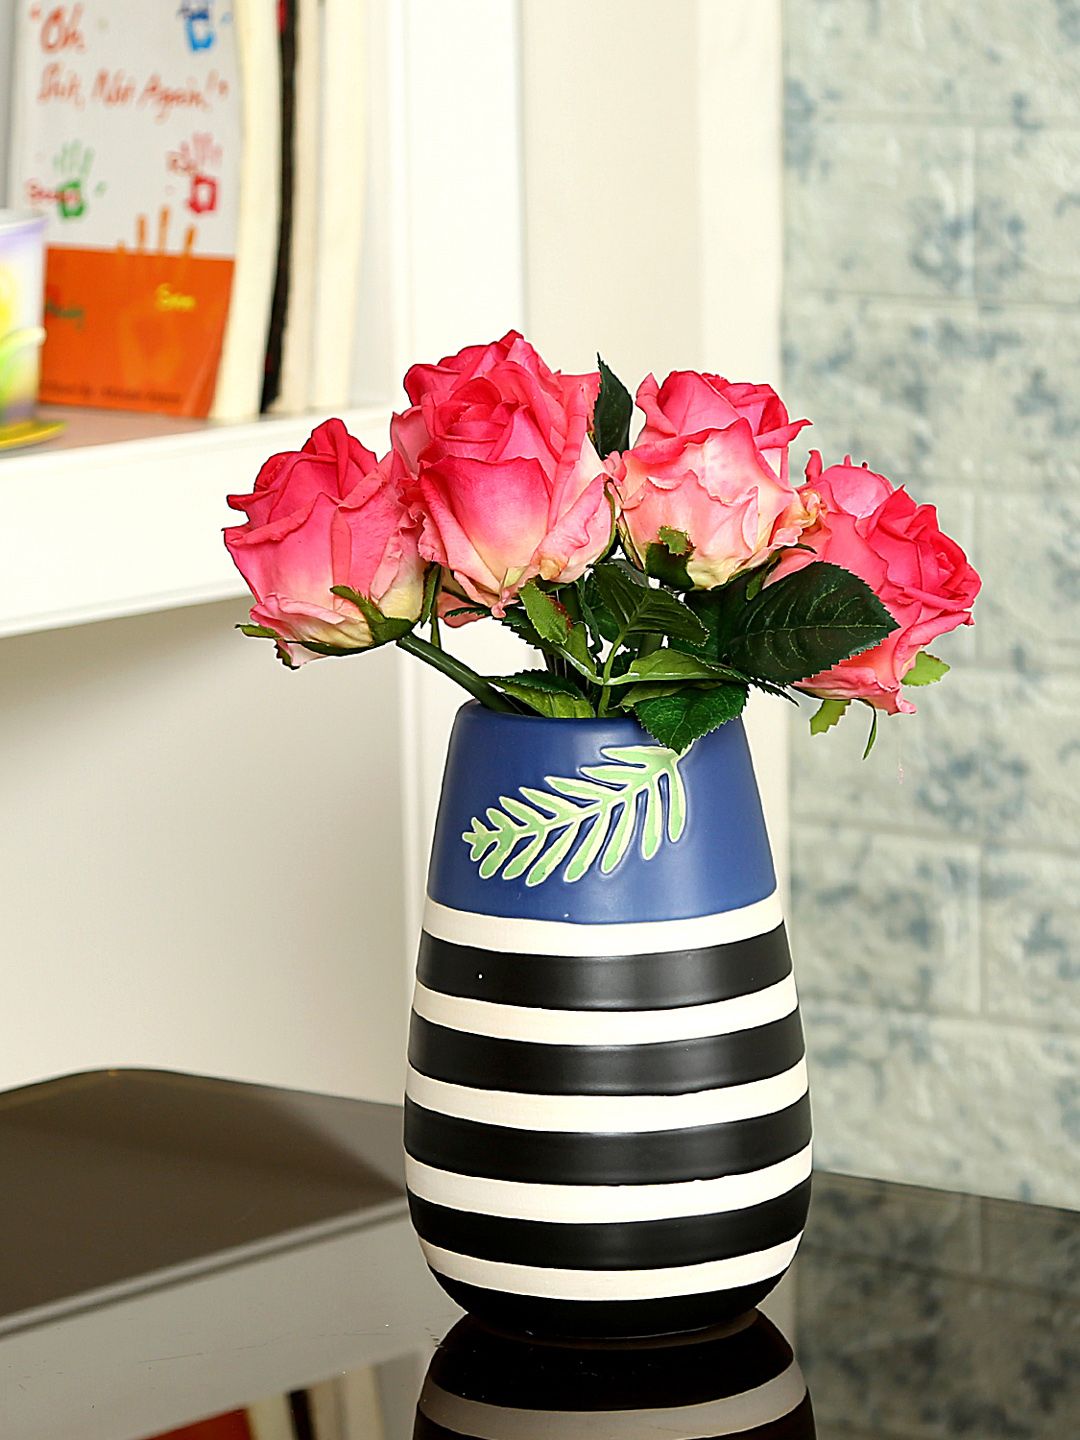 Aapno Rajasthan Blue & Black Ceramic Flower Vase Price in India